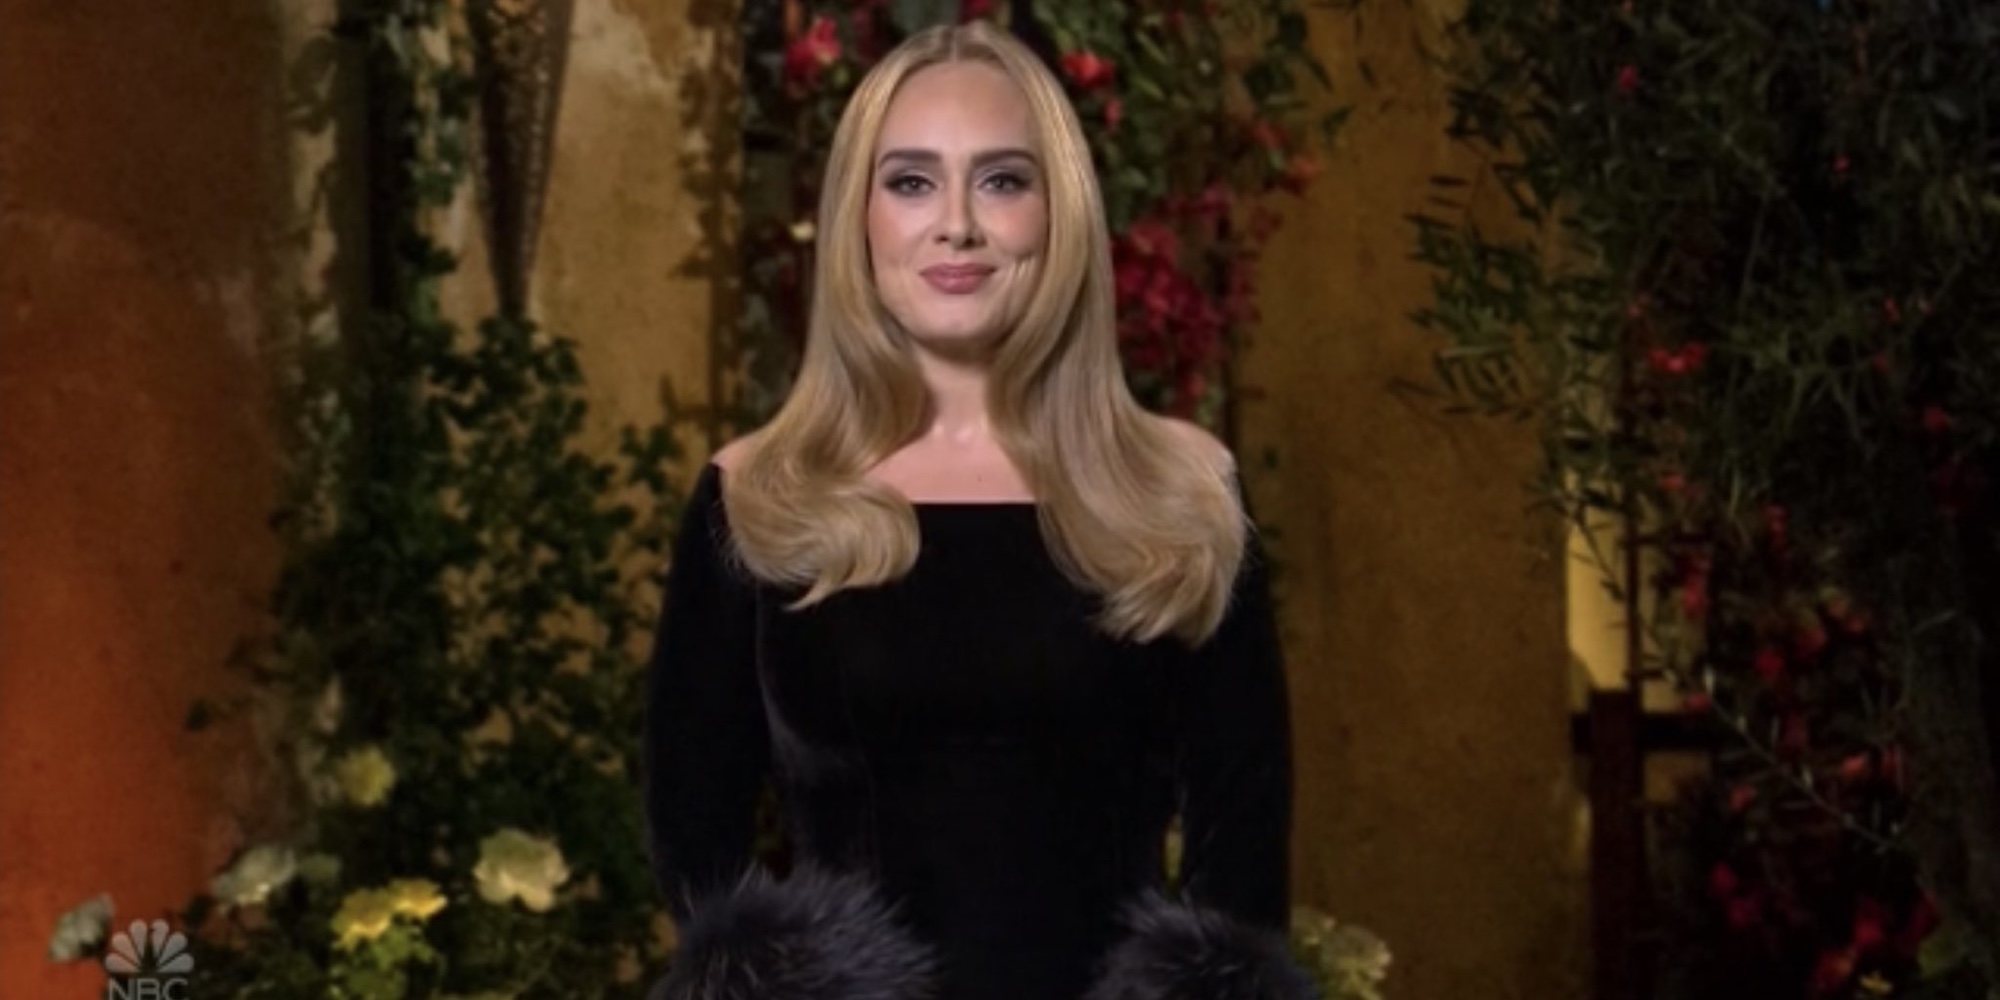 Adele reaparece tras años de silencio y con 70 kilos menos: "Sé que estoy diferente"